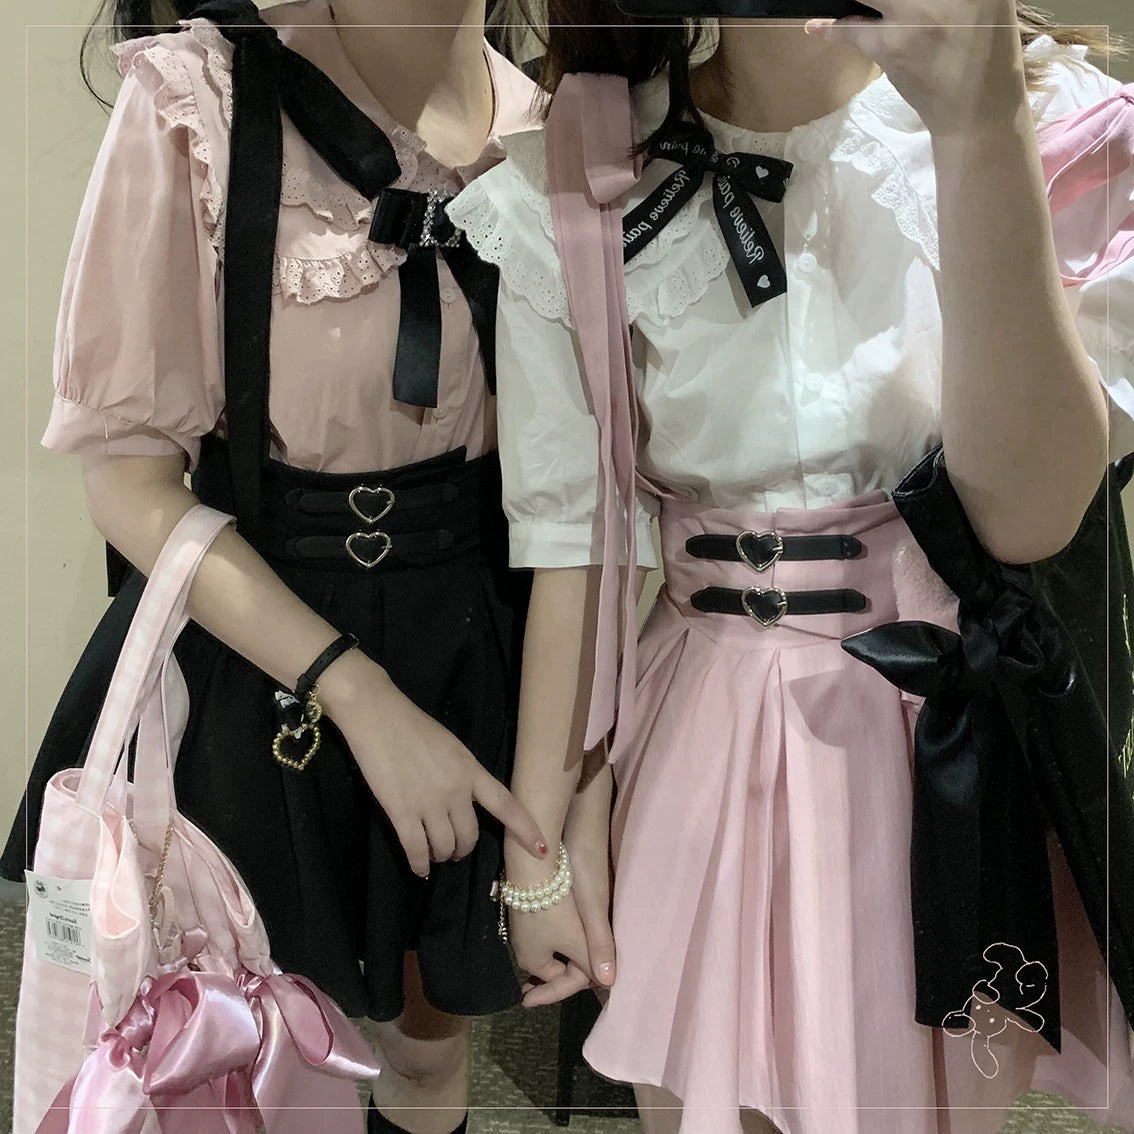 Jirai Kei Overall Dress Salopette Heart Buckle Suspender Skirt 35386:526736